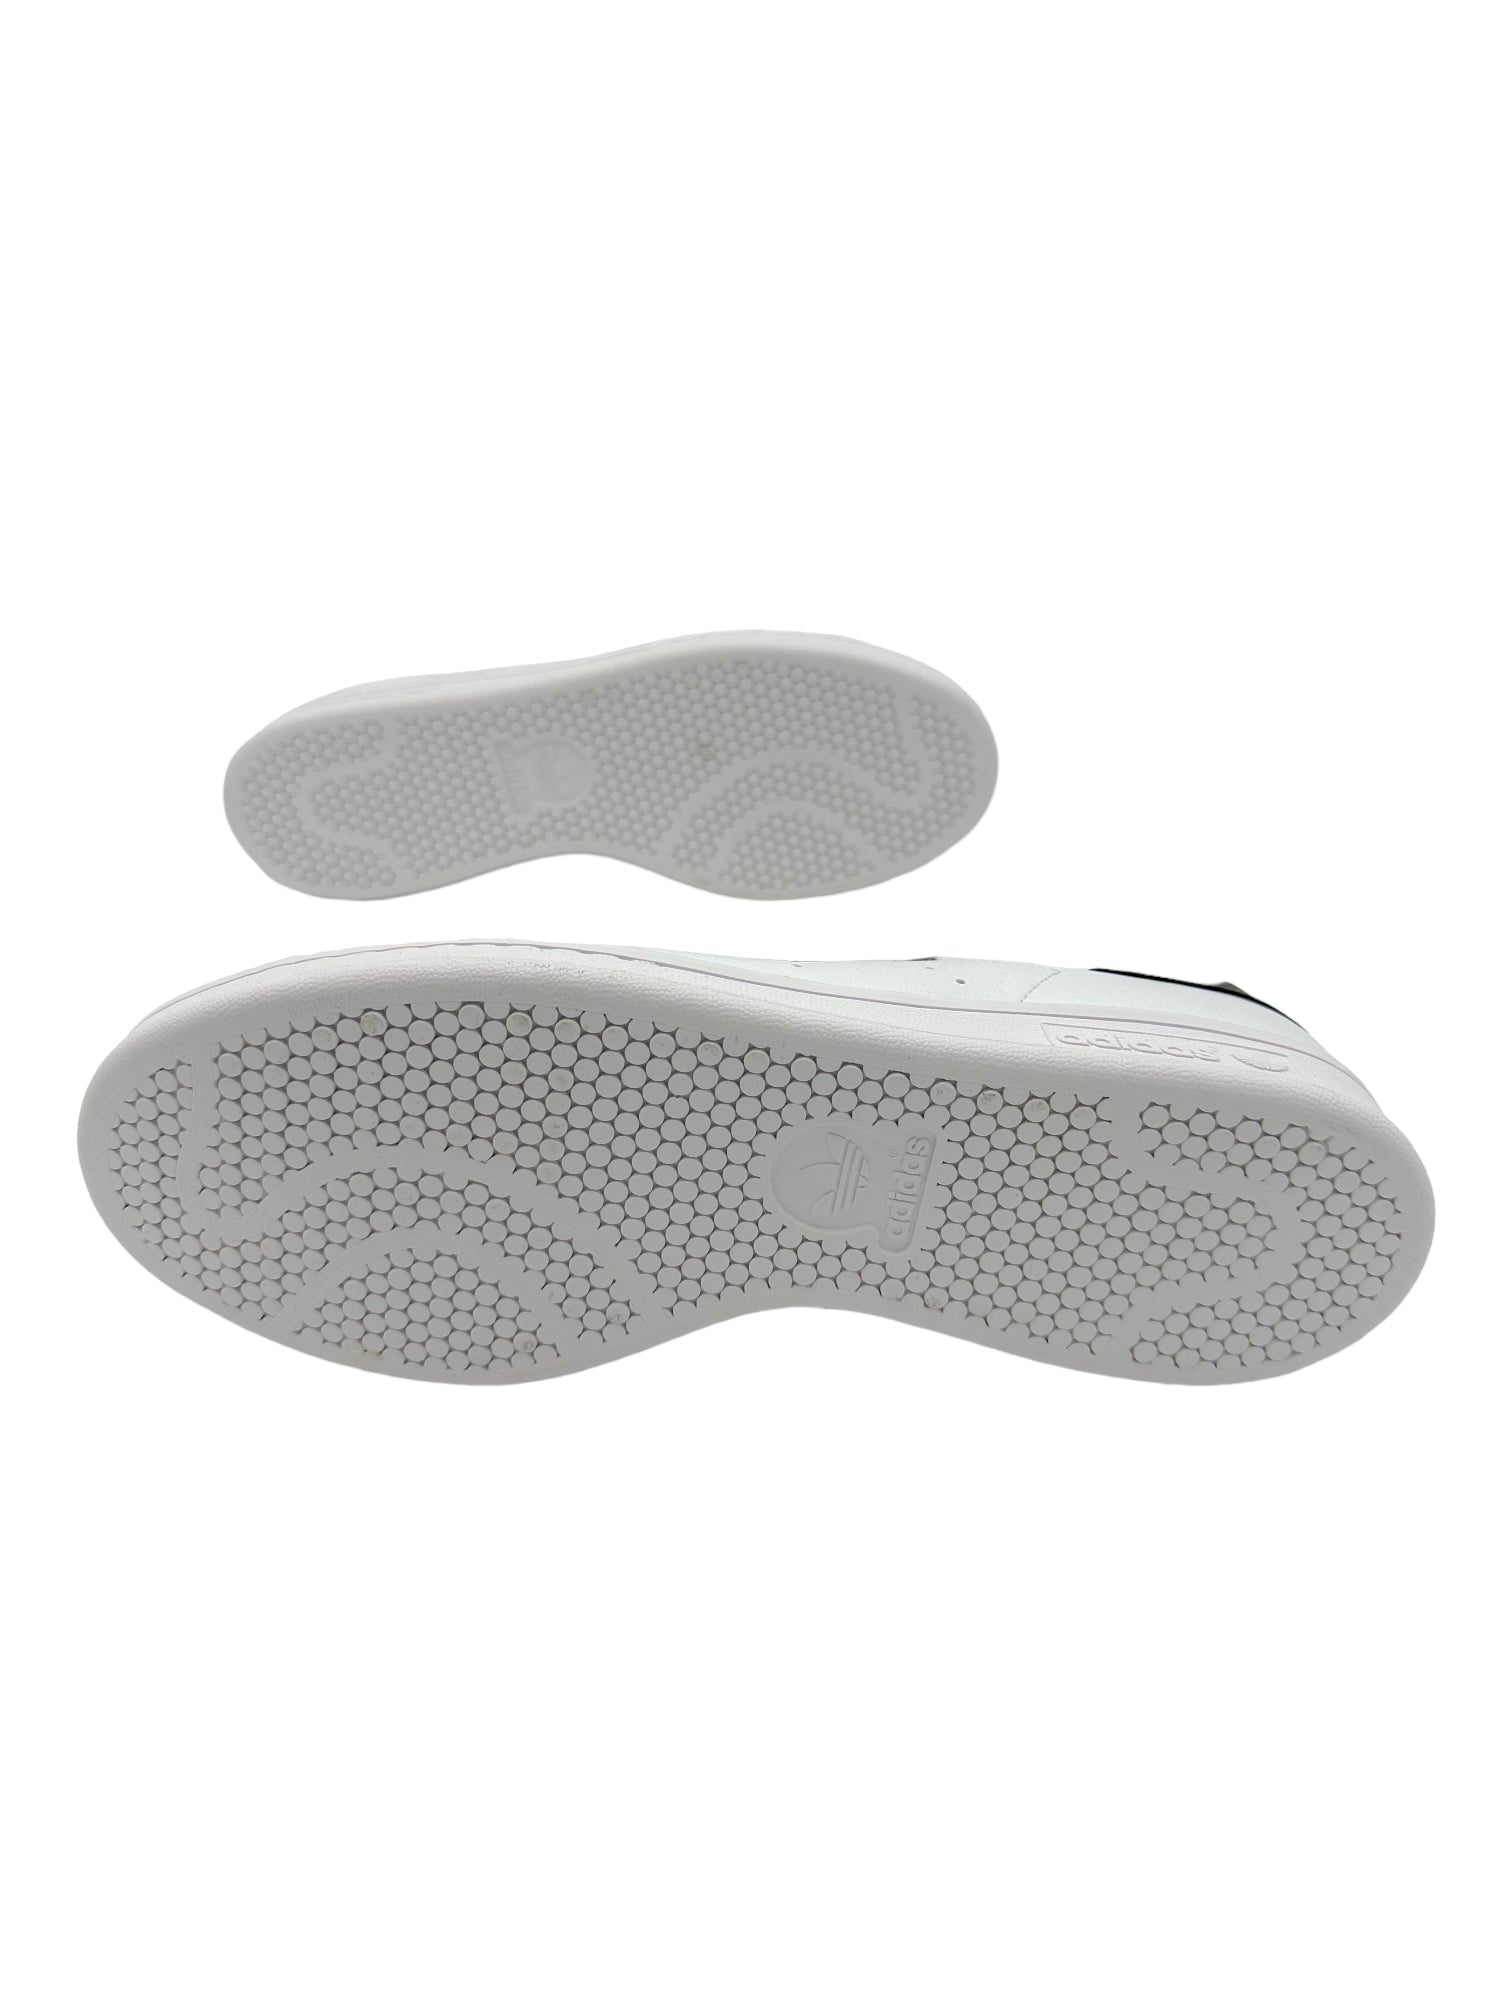 Adidas Stan Smith Marimekko Unikko White Sneakers – Genuine Design